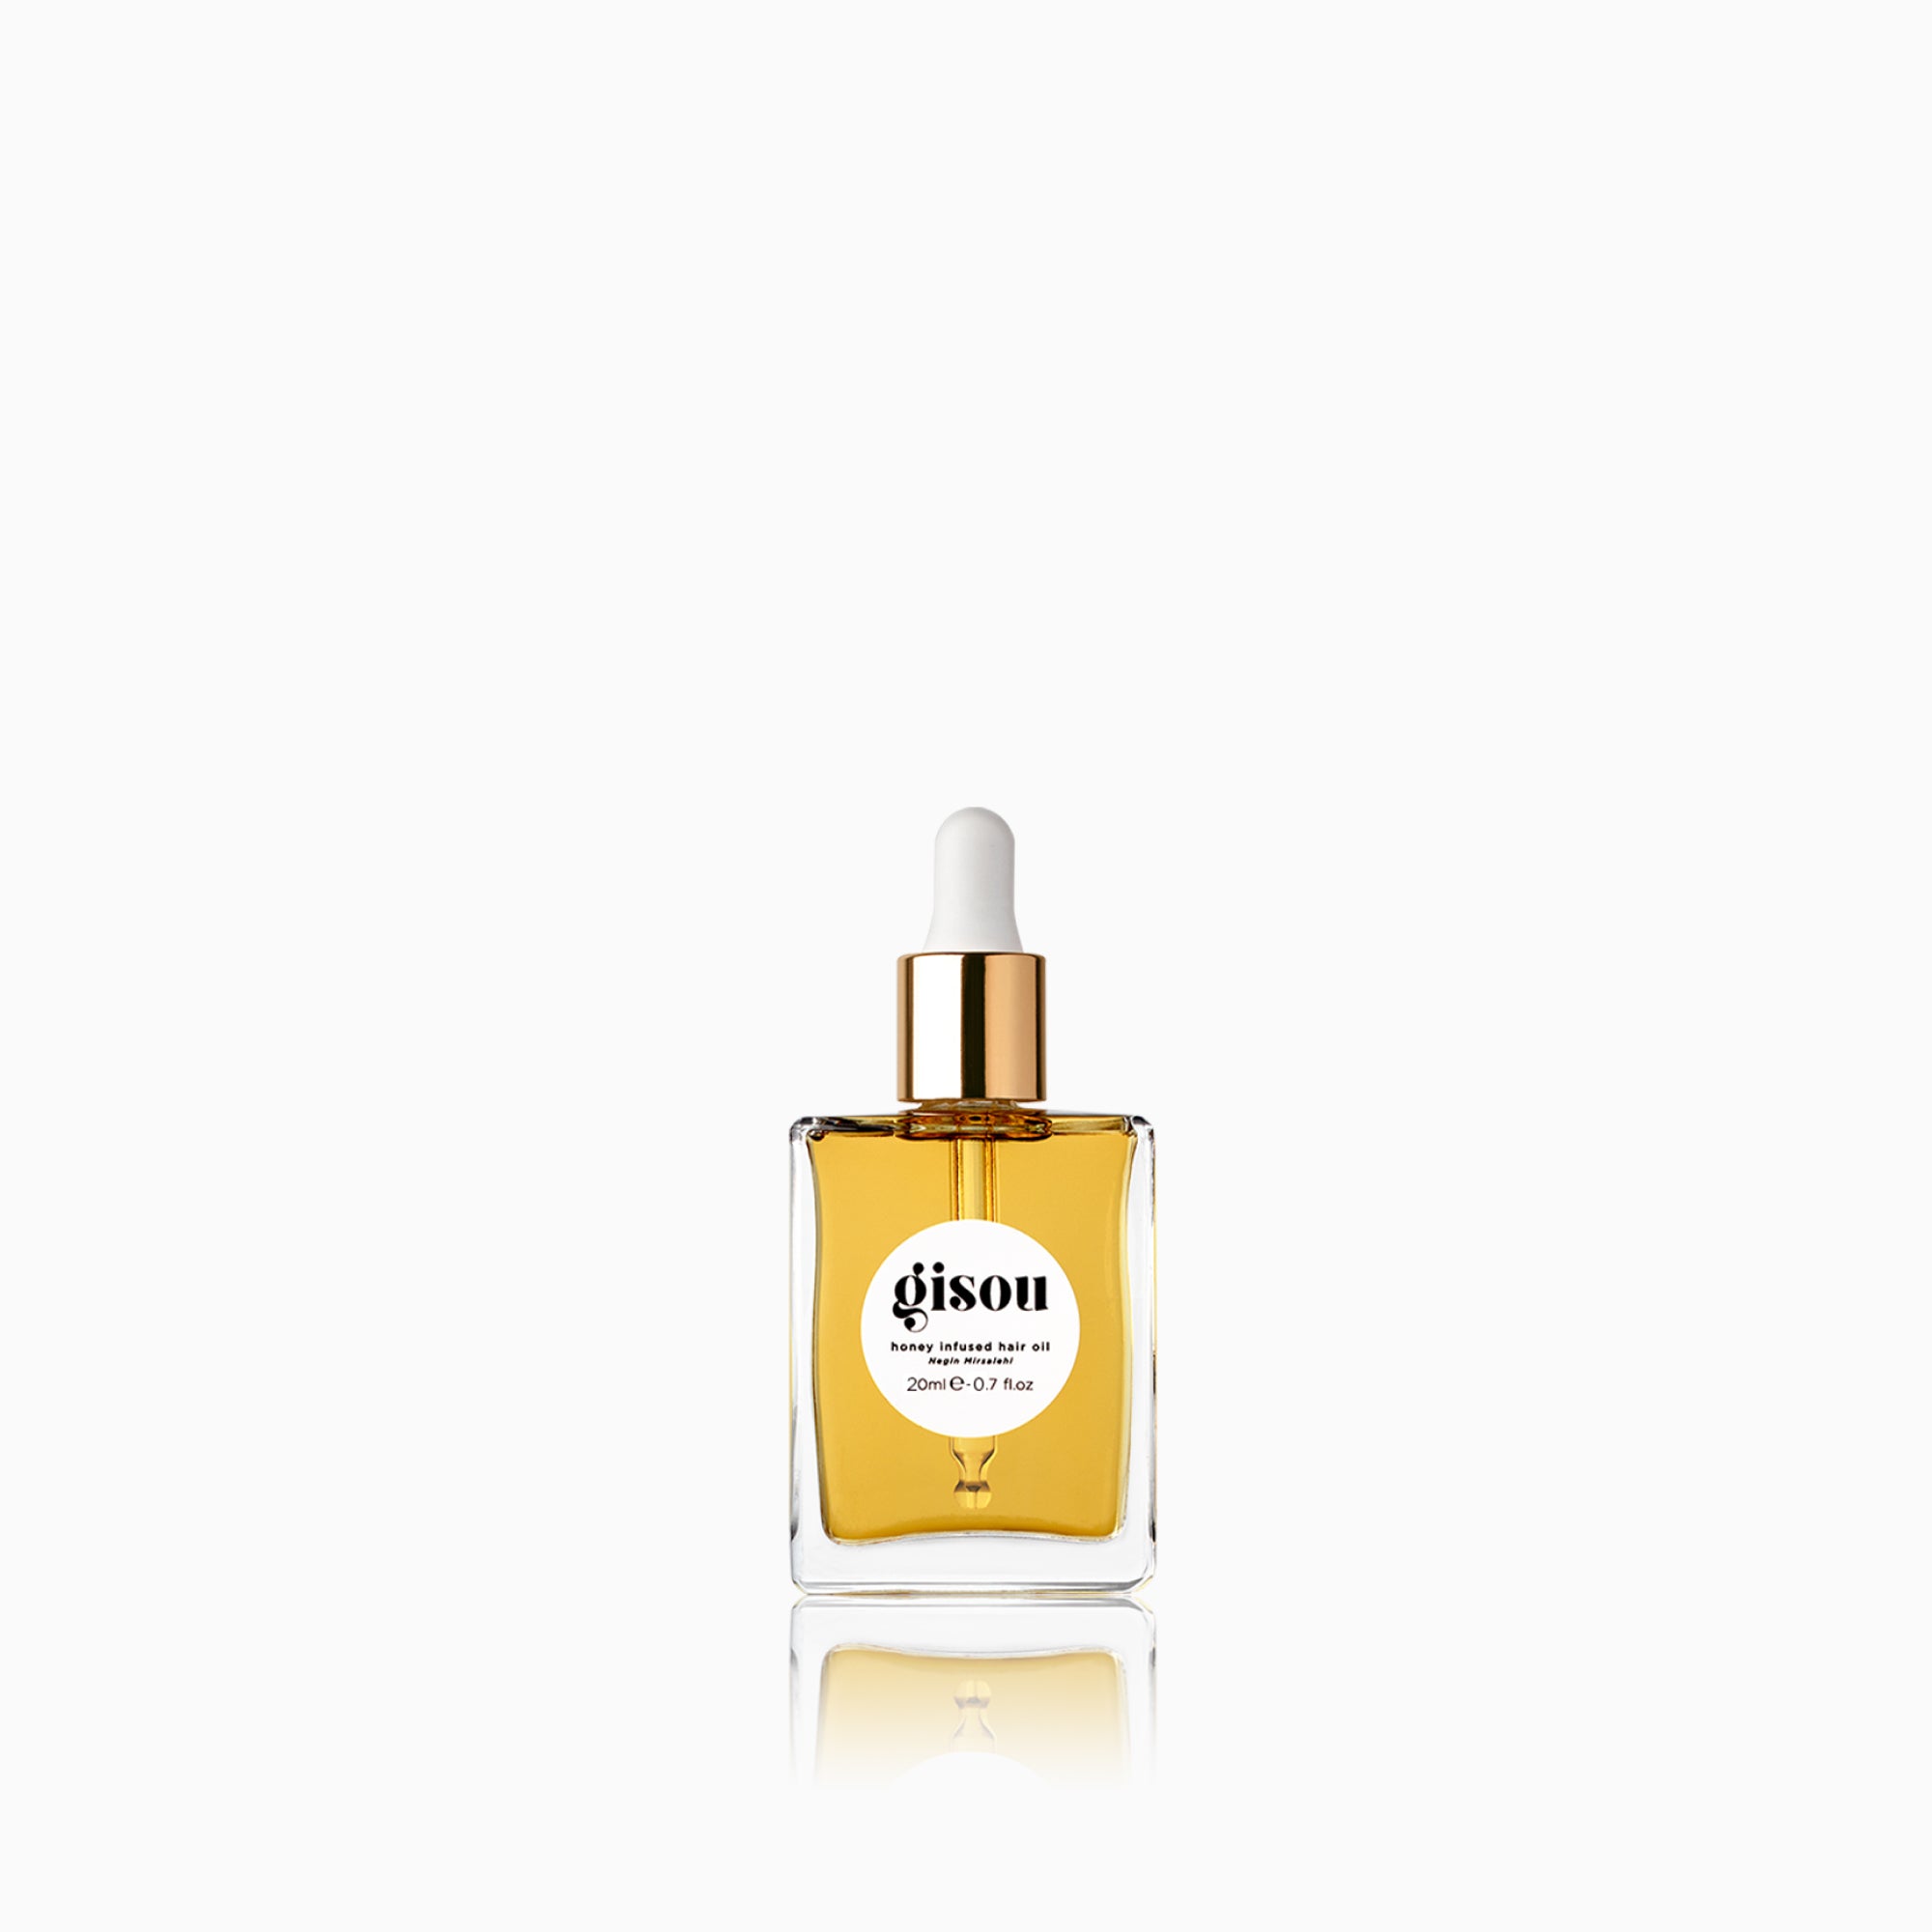 Honey infused Hair Oil - Nourish, Repair & Protect Hair | Gisou